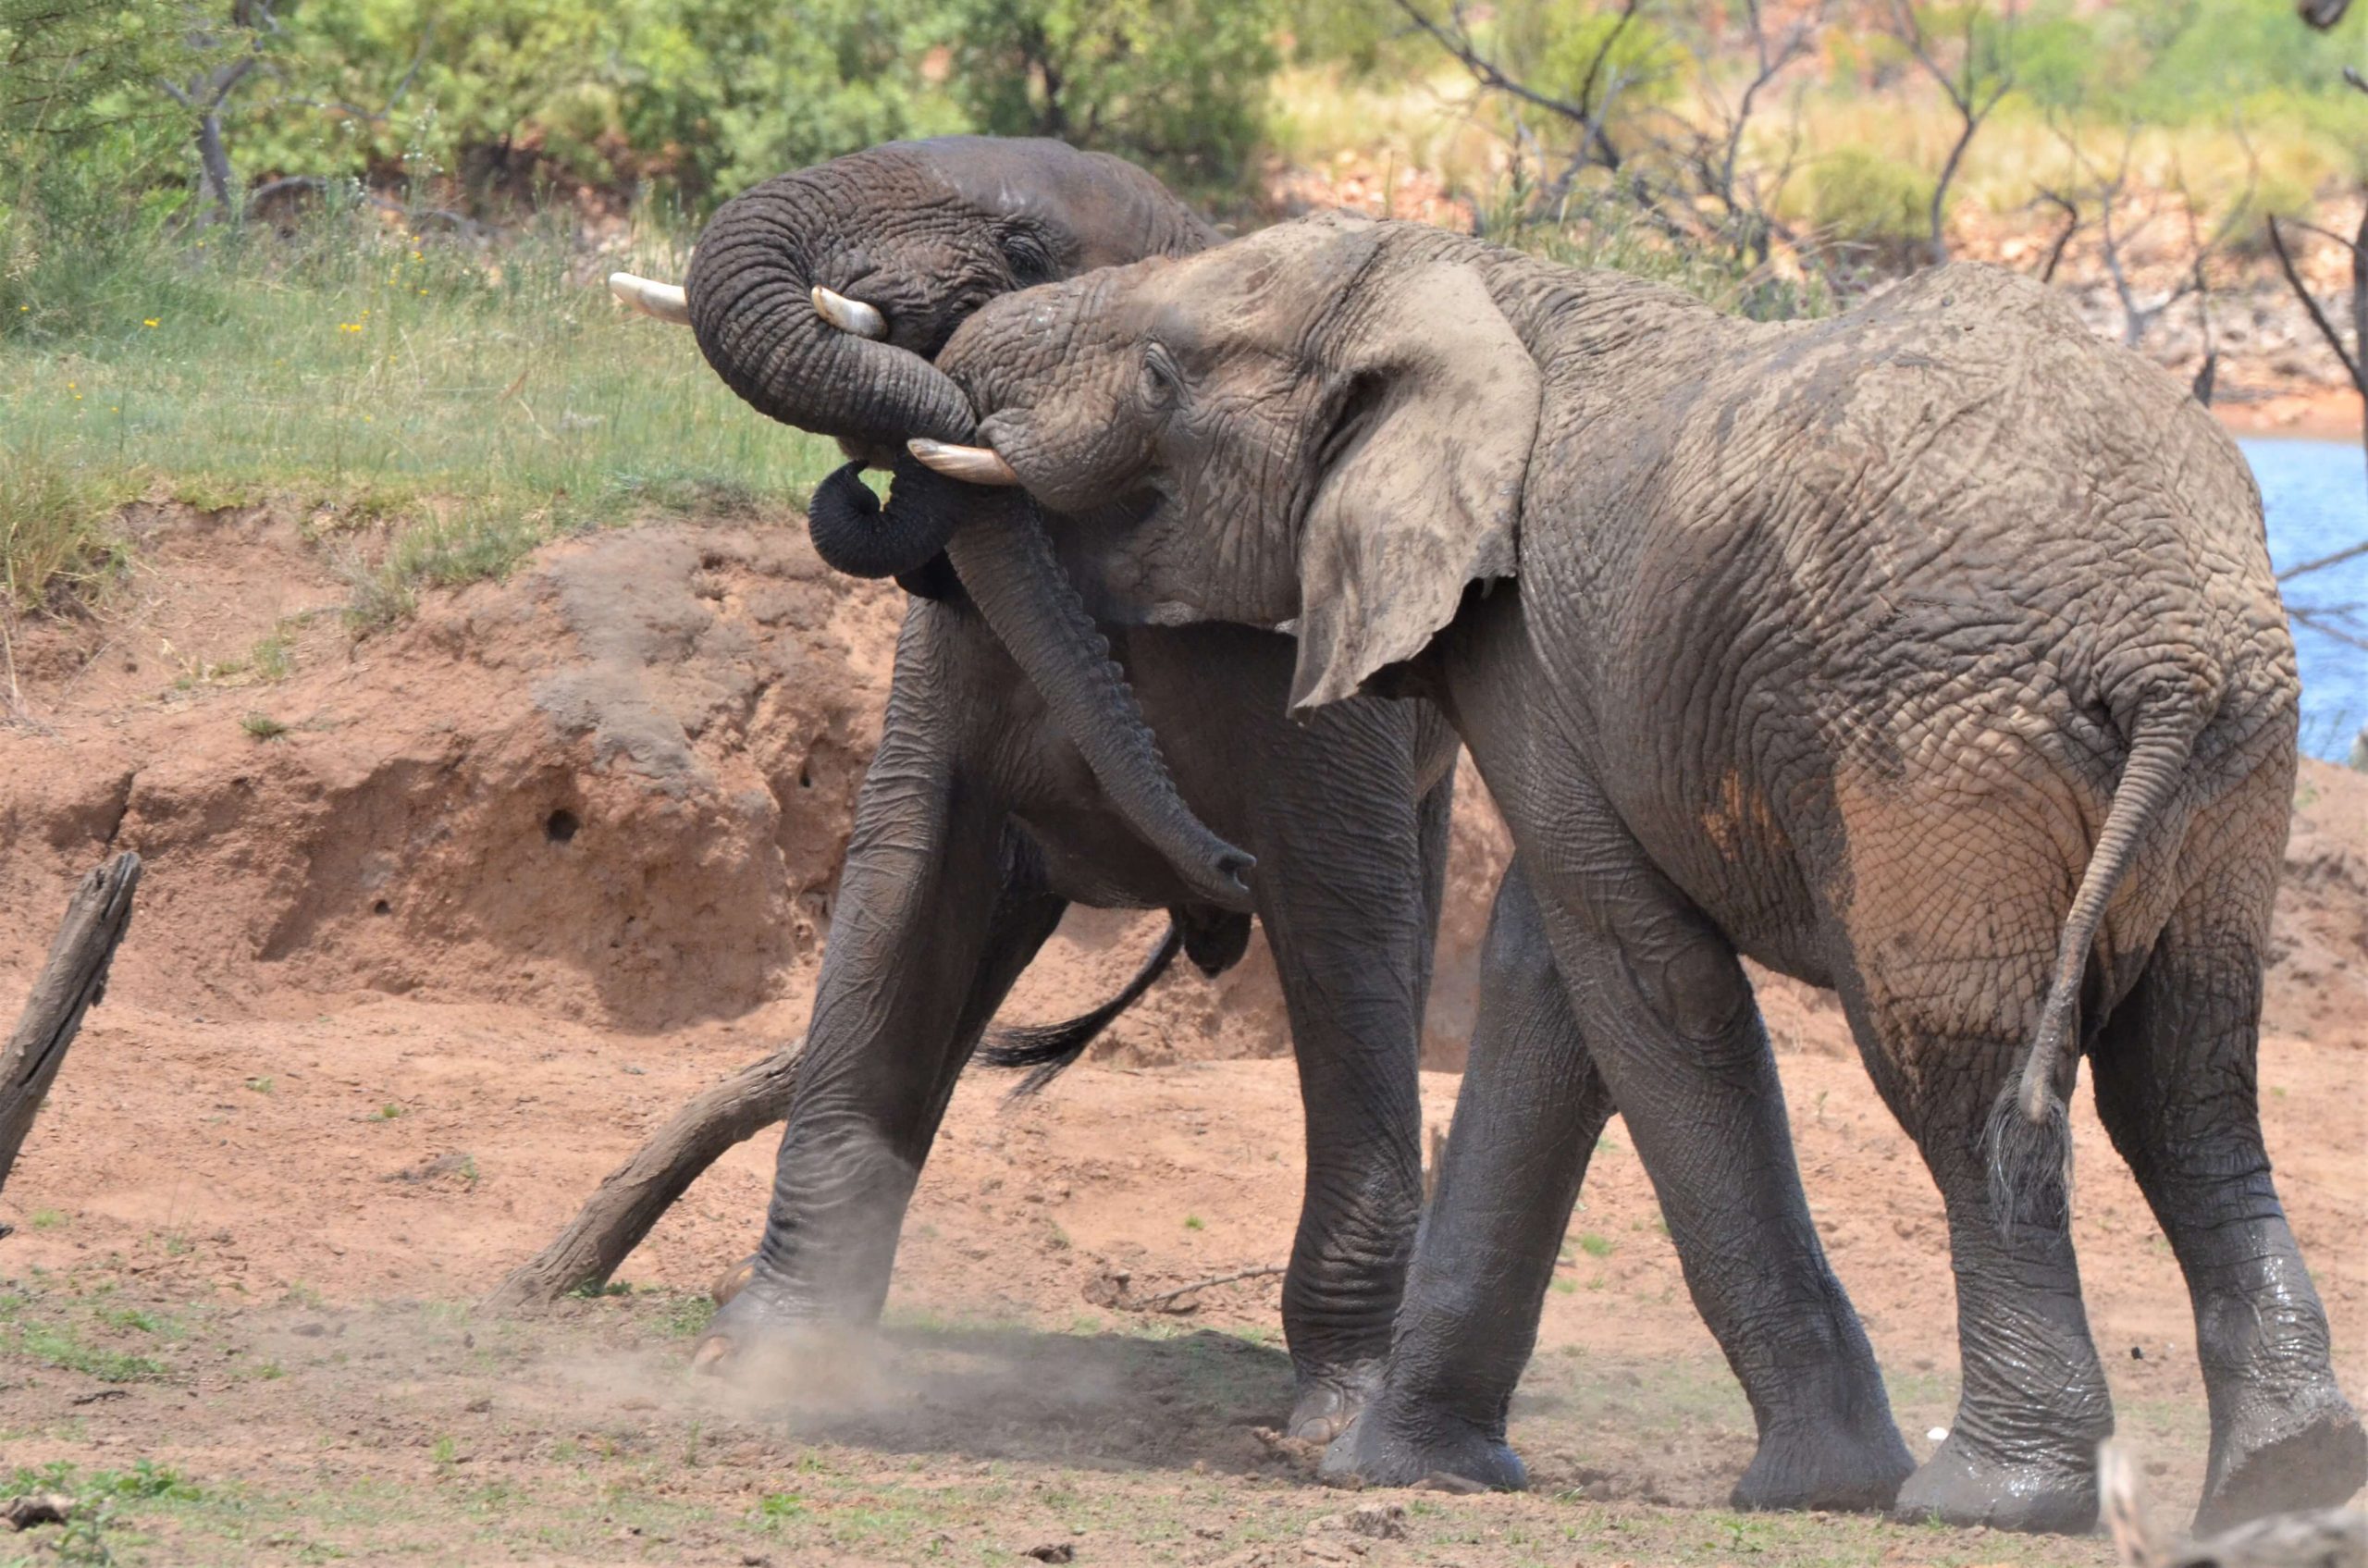 Fighting elephants